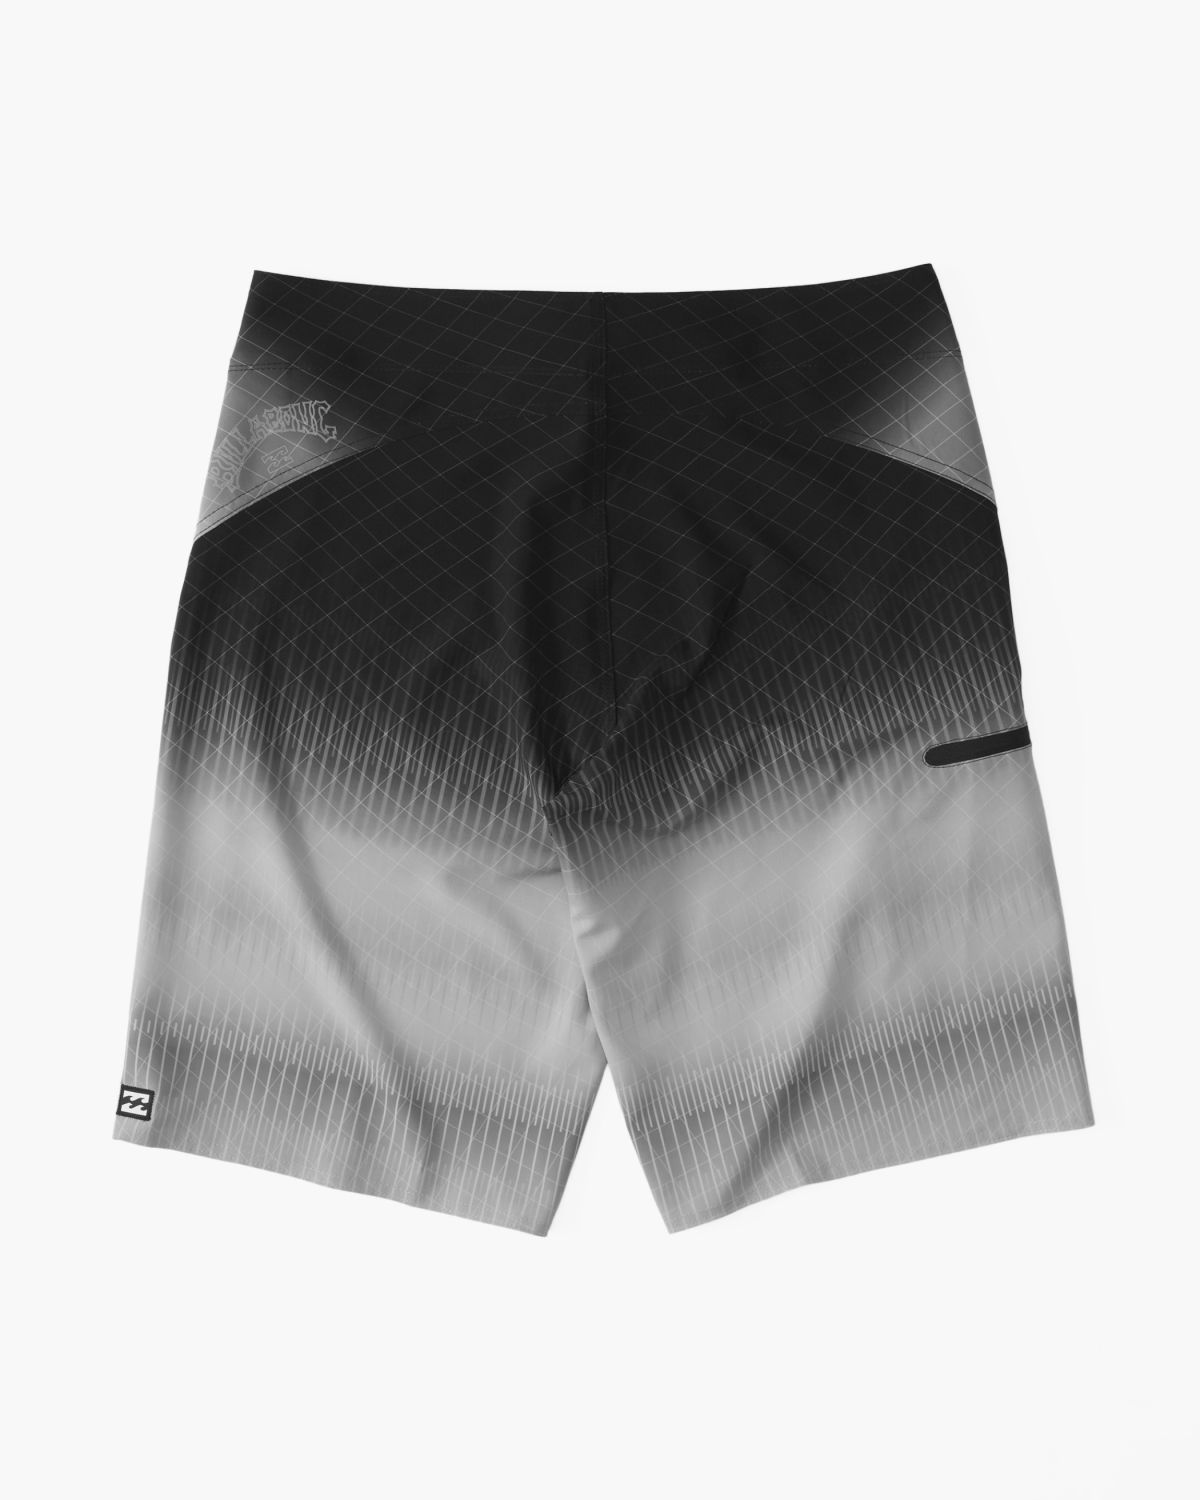  מכנסי בגד ים בהדפס / גברים של BILLABONG